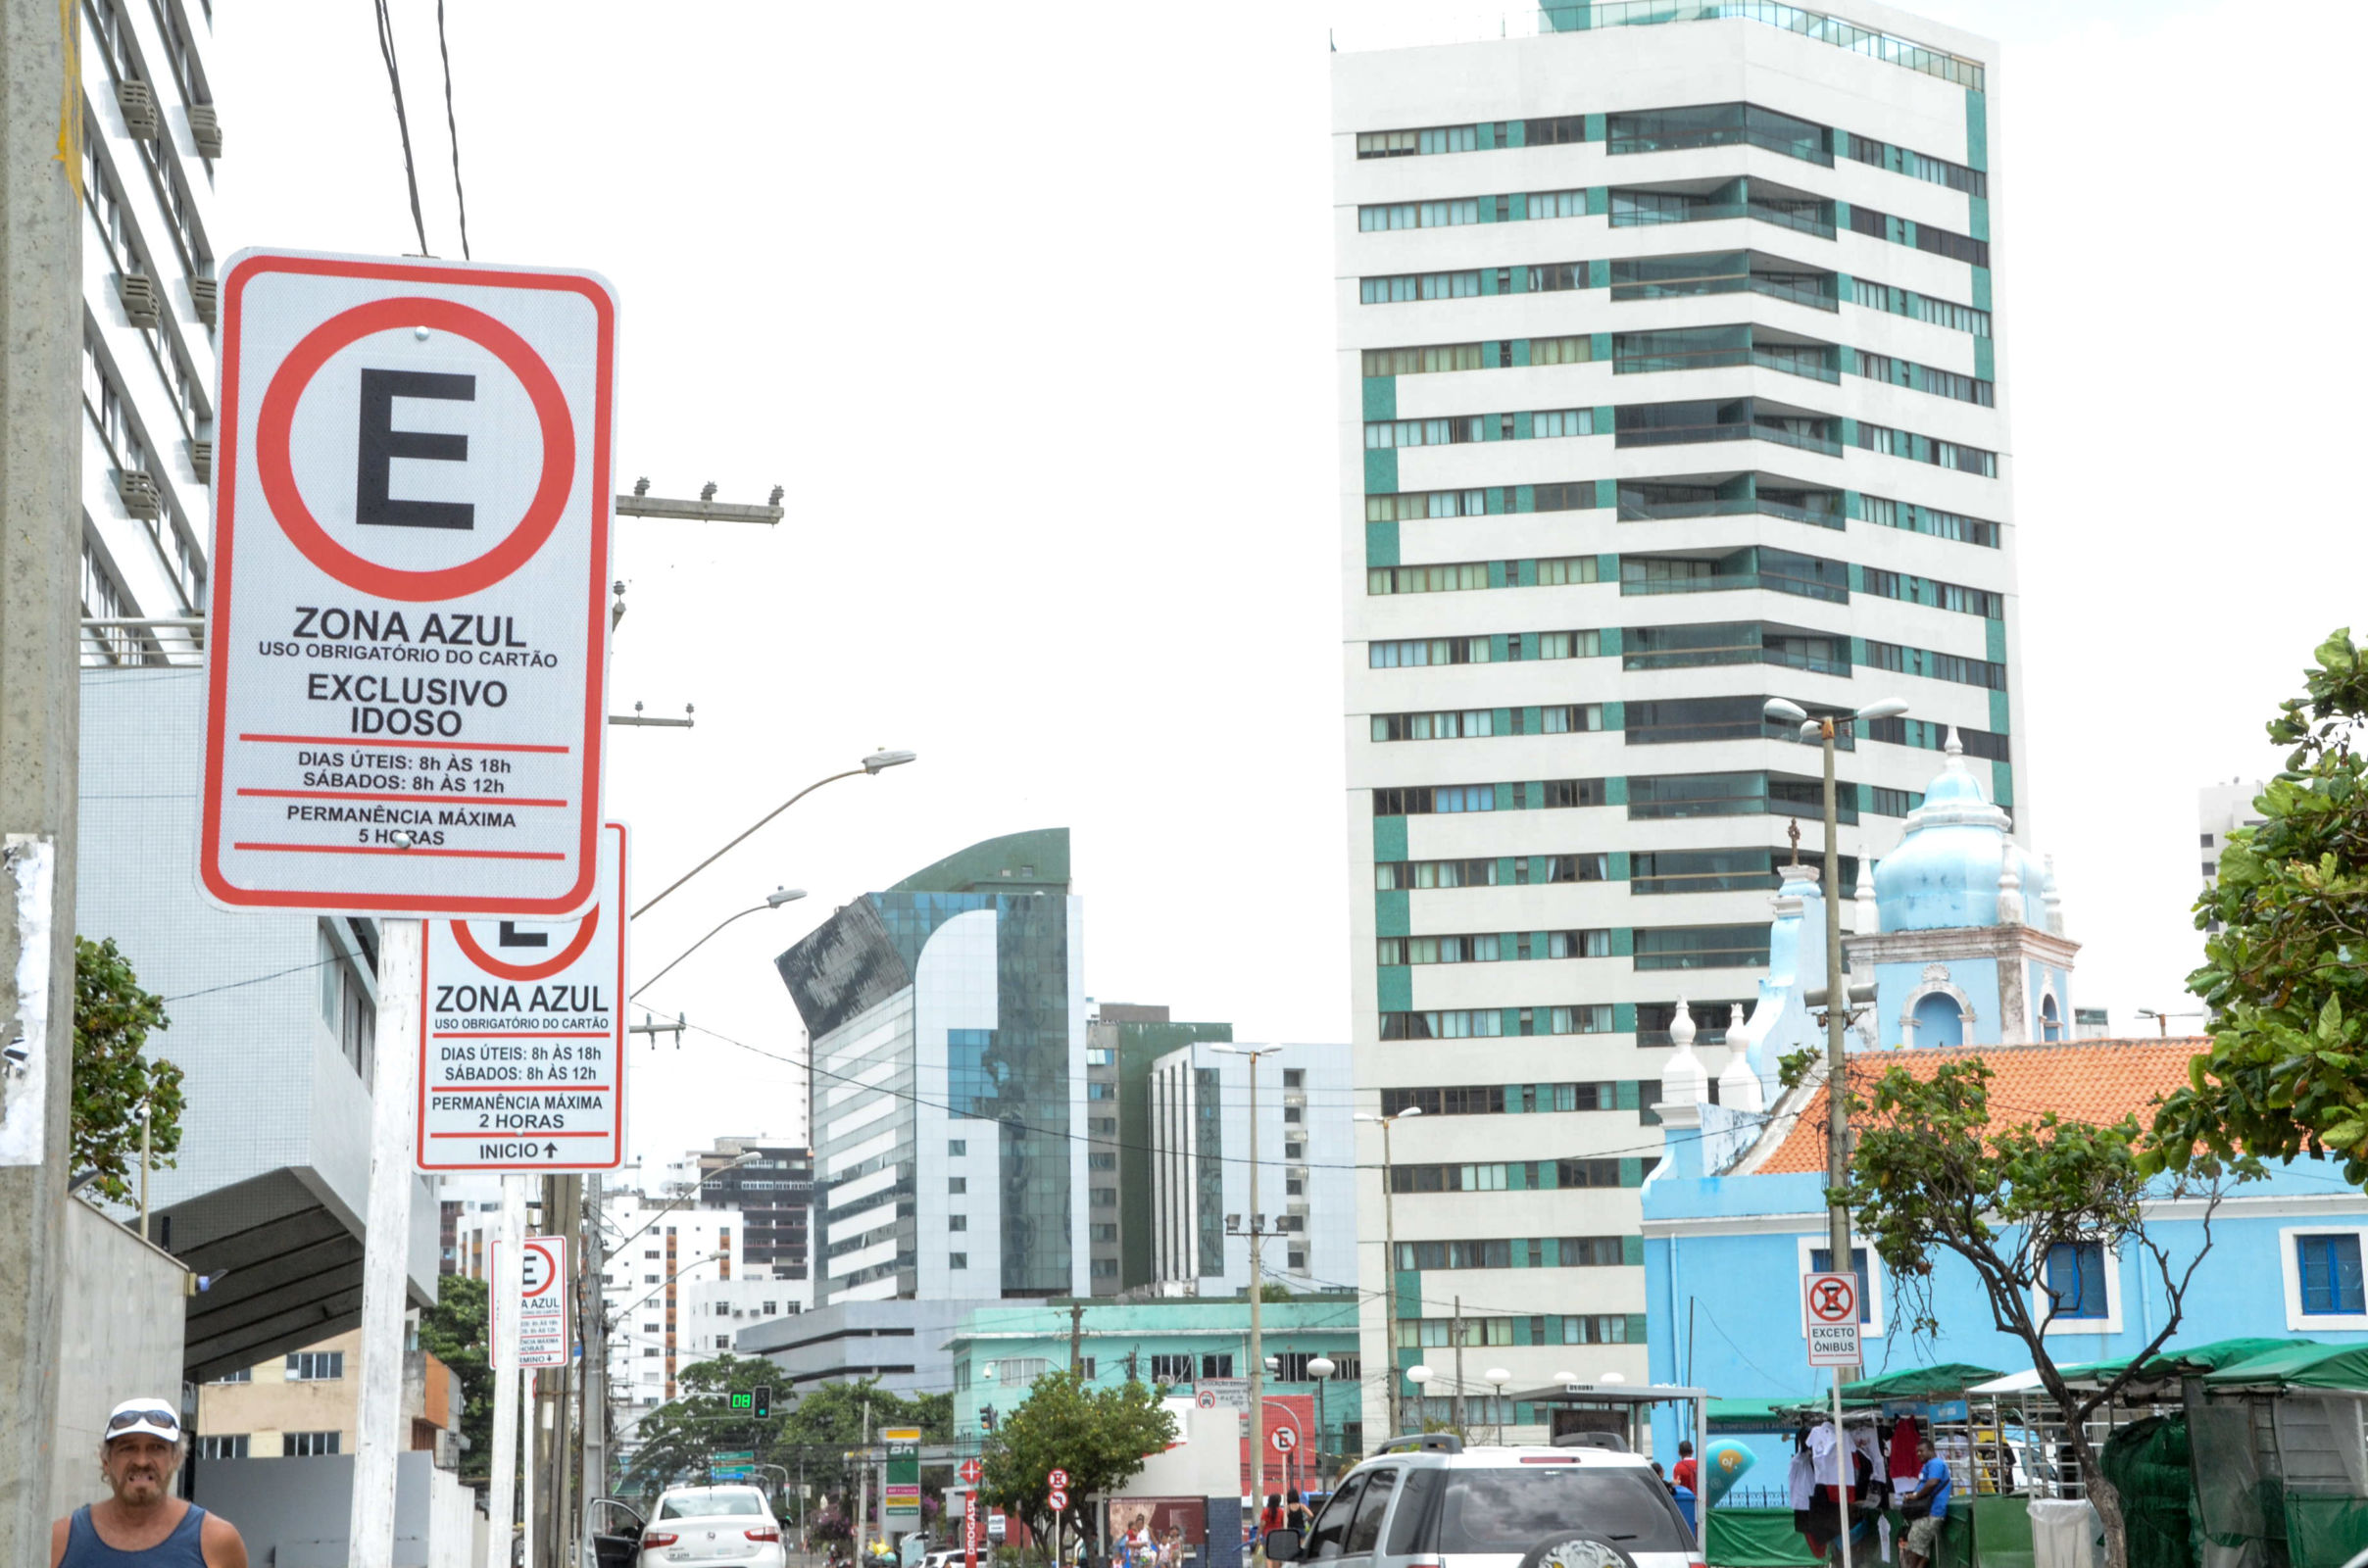 Para escapar das multas, motoristas devem ficar atentos às regras do estacionamento rotativo em cada local, pois ela é definida pela administração municipal